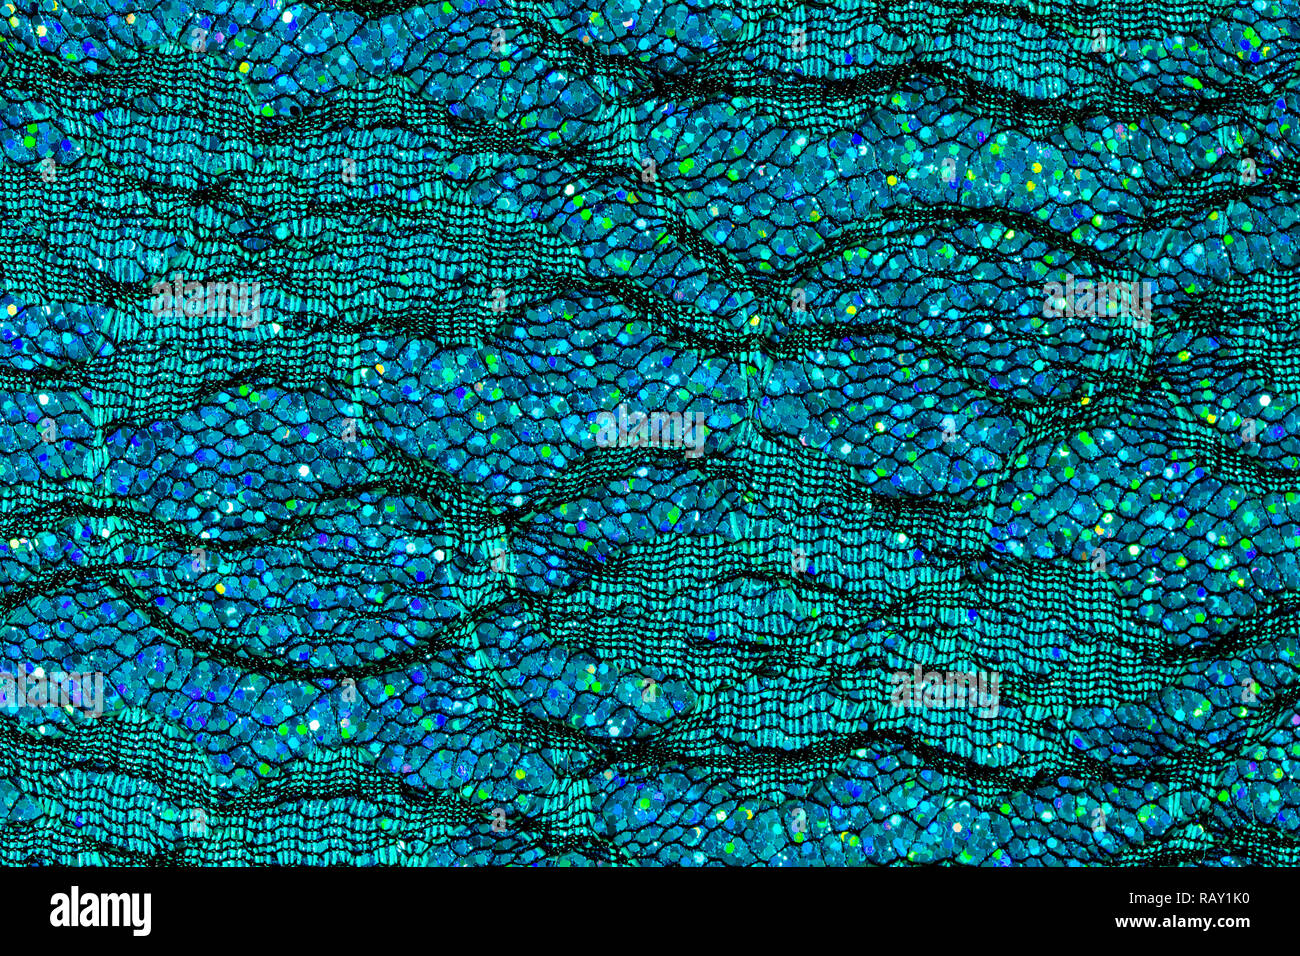 Résumé fond de paillettes bleu sur la dentelle qui ressemble à de l'eau ou les écailles de poisson Banque D'Images